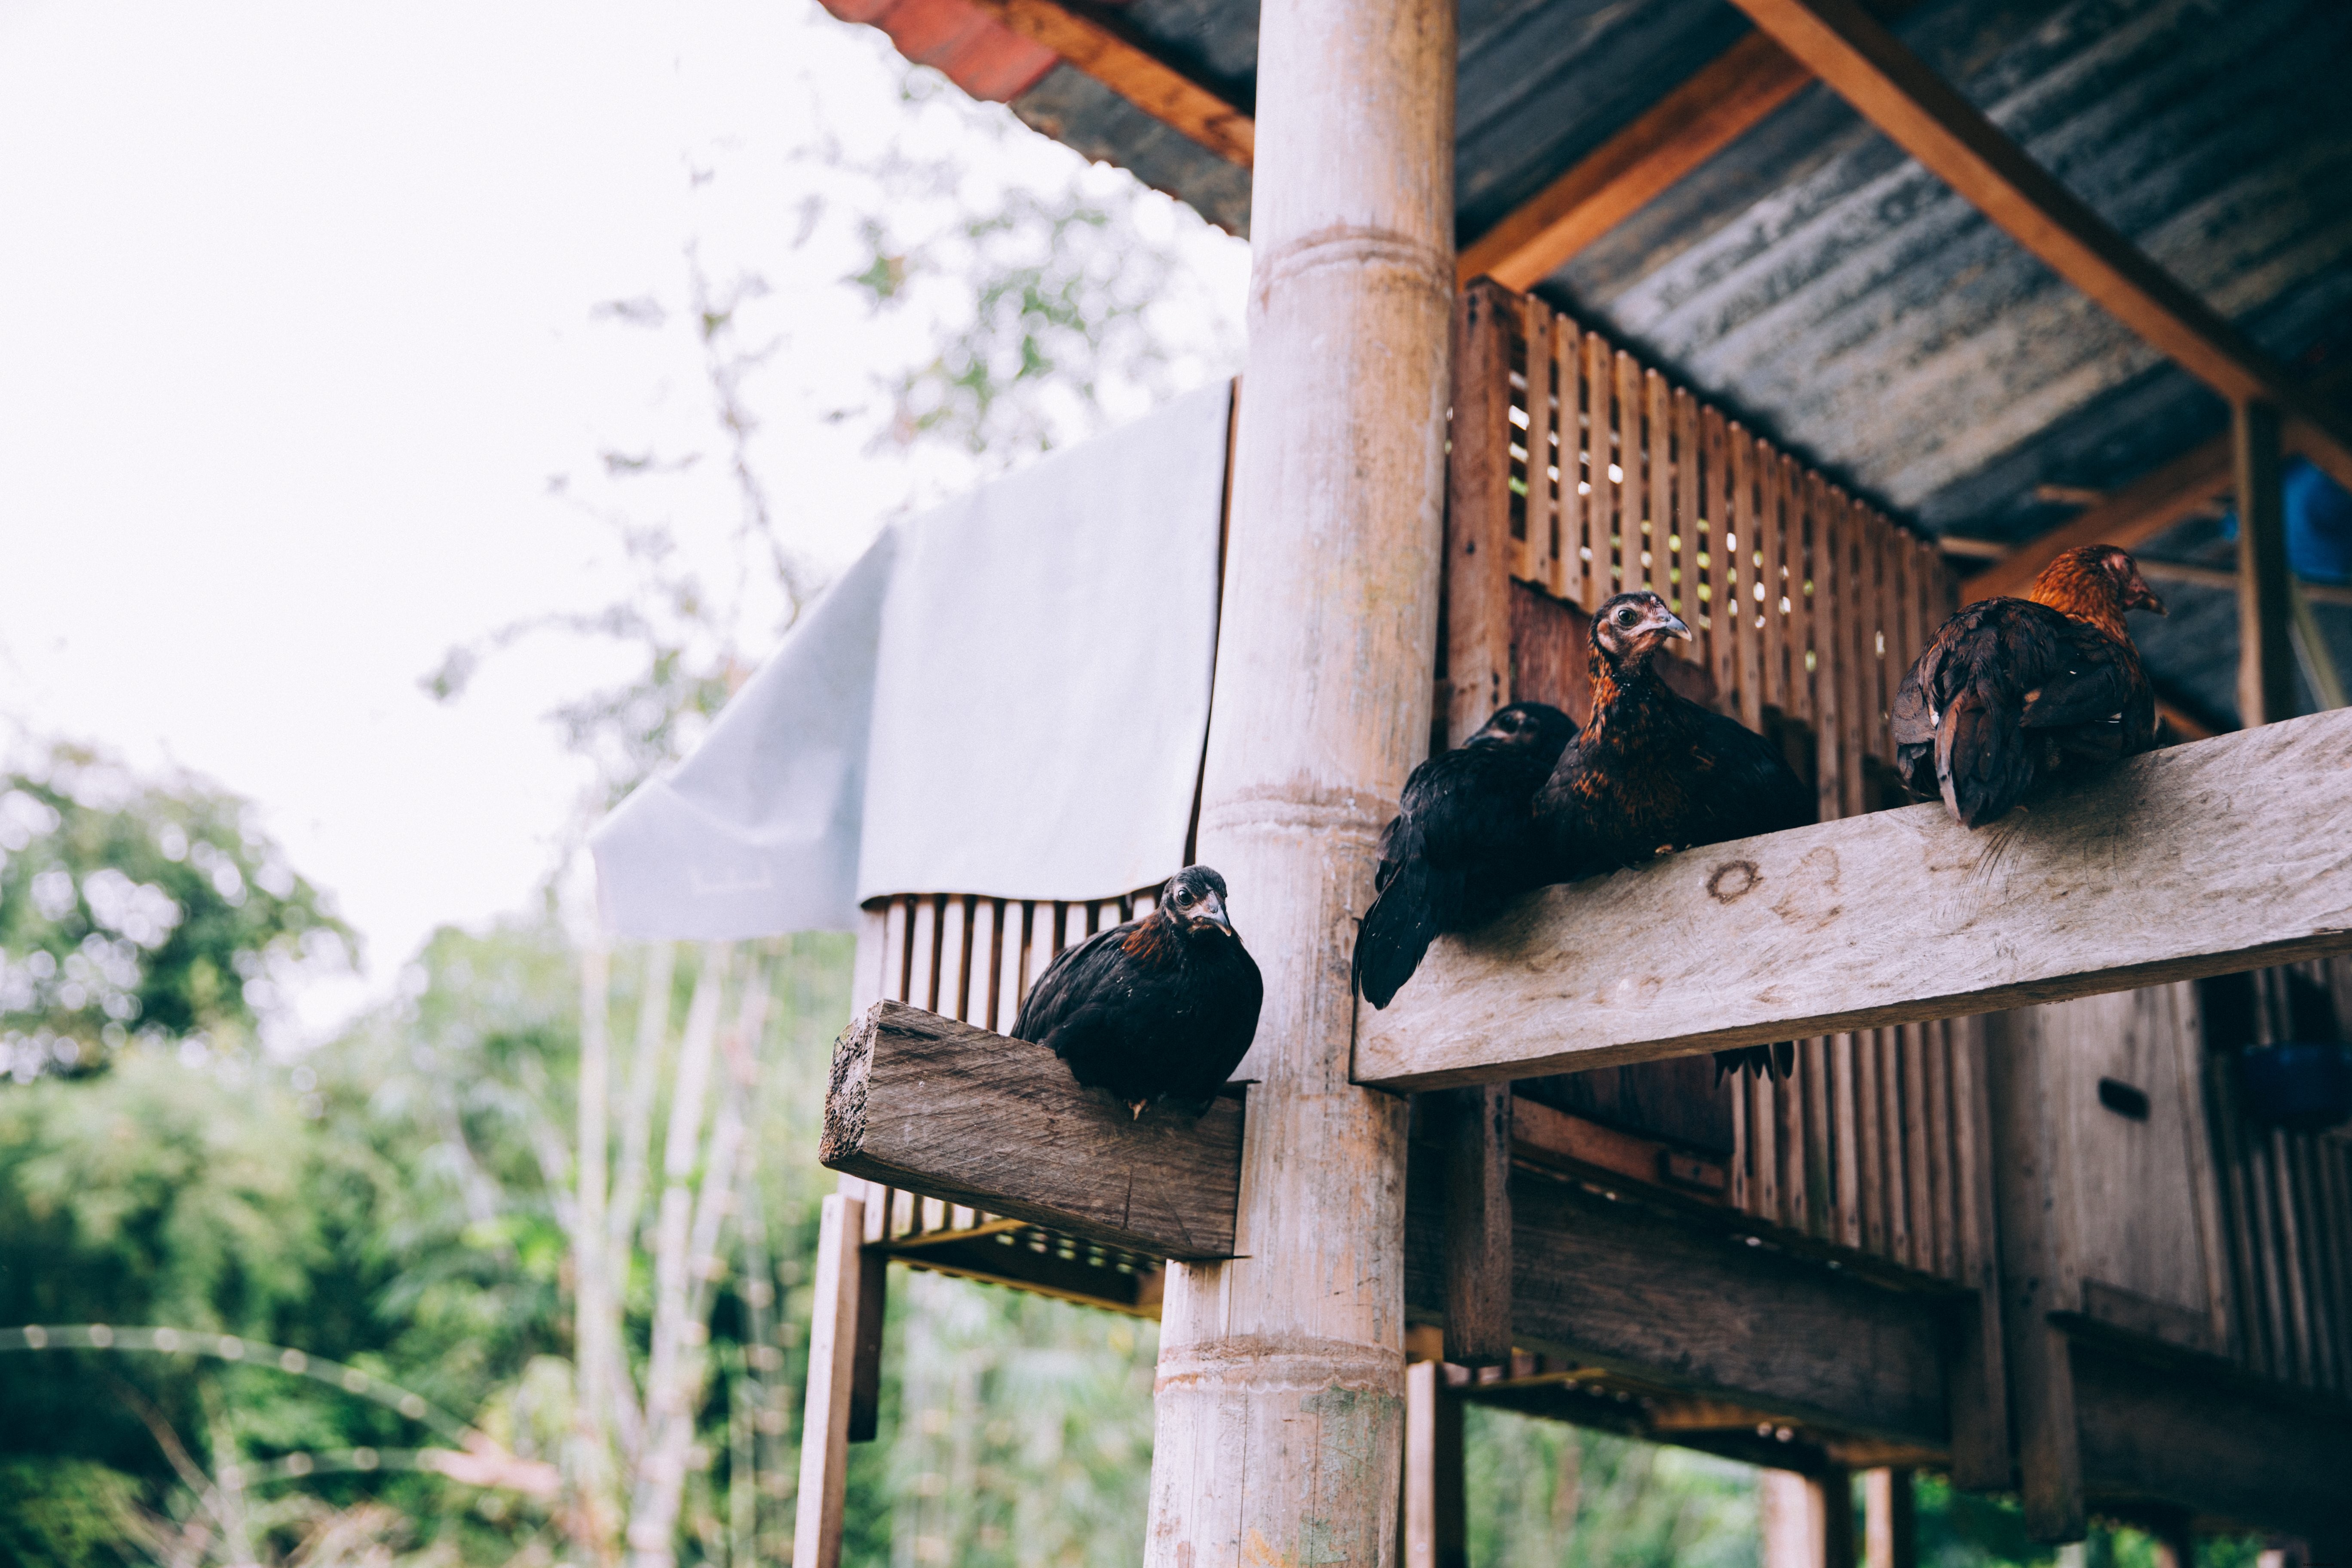 インドネシアの寺院の木製の梁にとまる鳥写真 